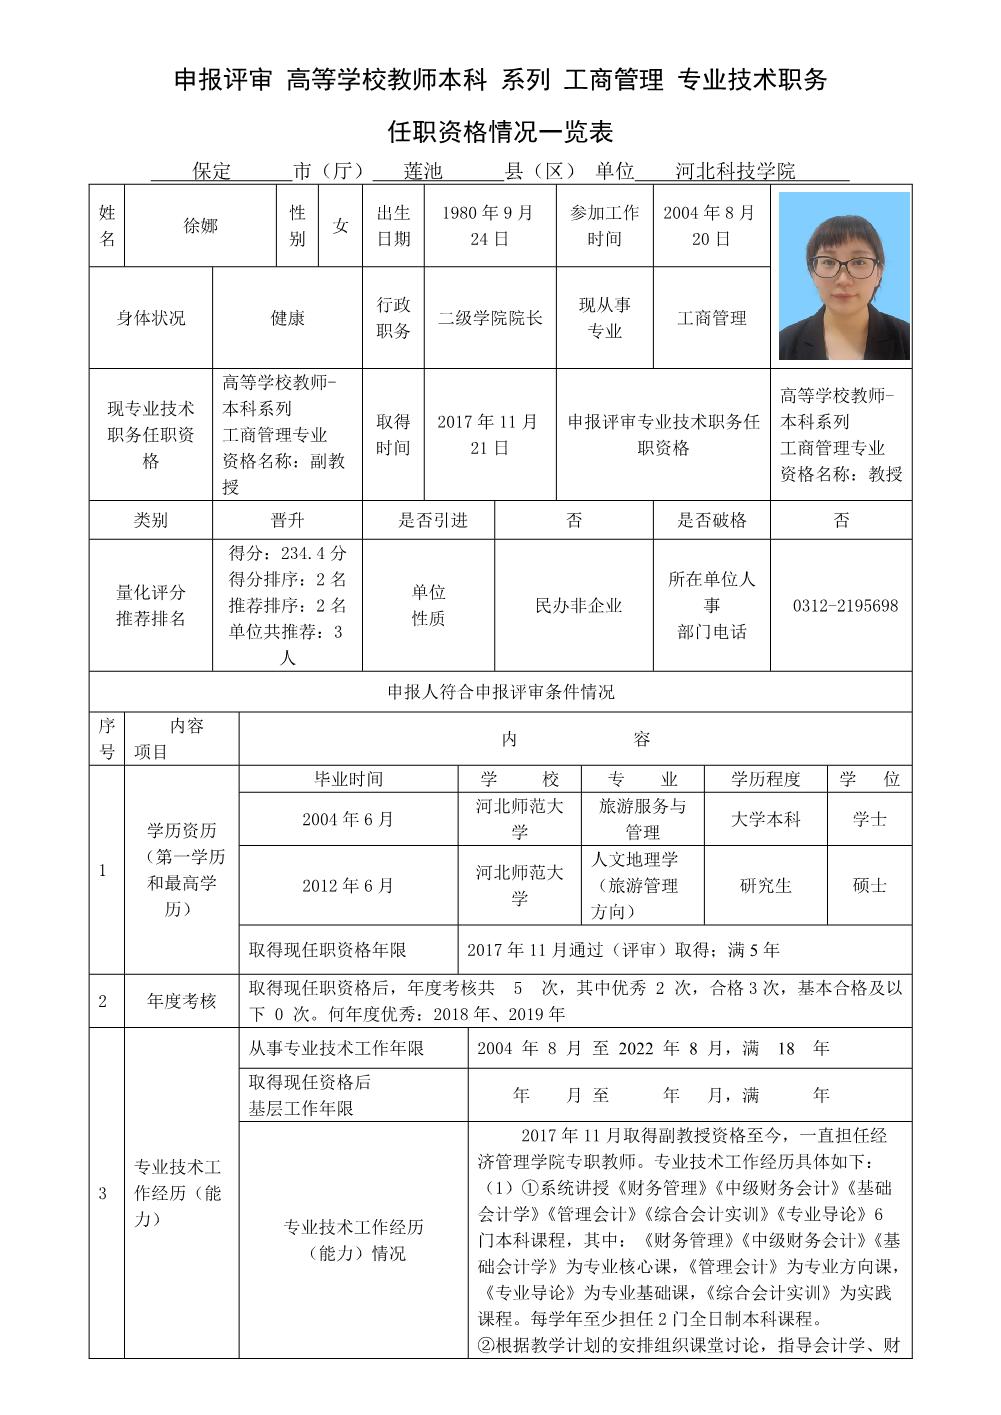 徐娜2022年任职资格情况一览表